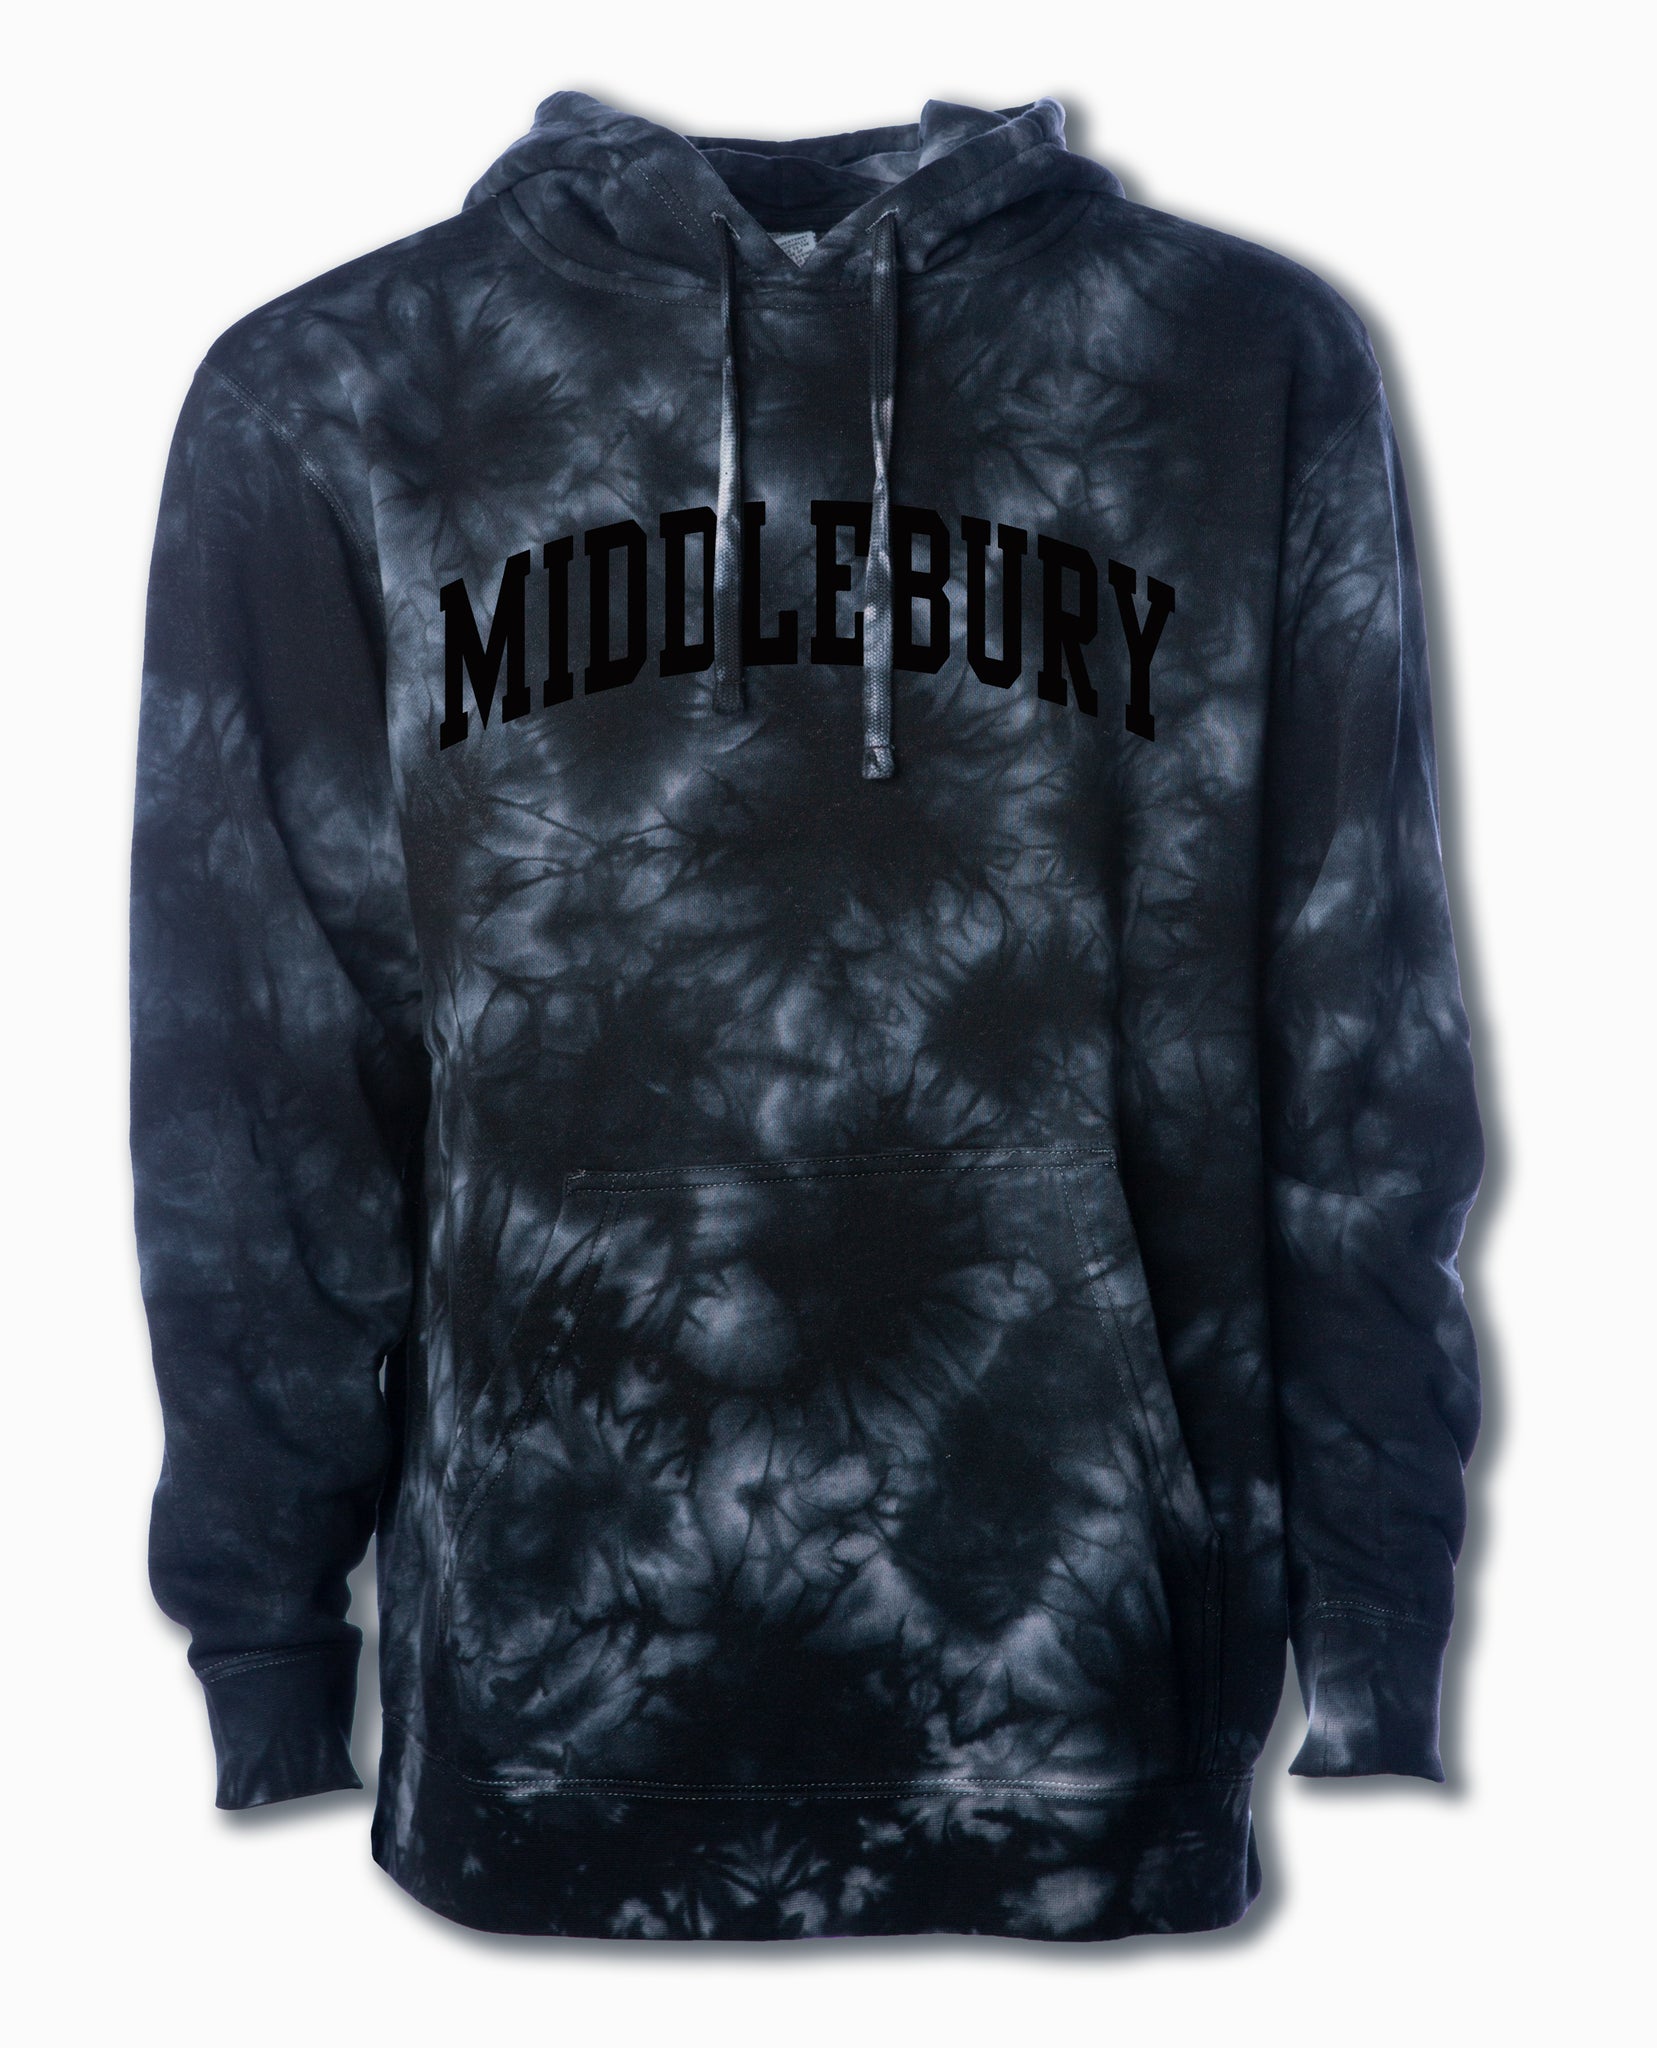 Middlebury Hooded Sweatshirt (Tie-Dyed Black)